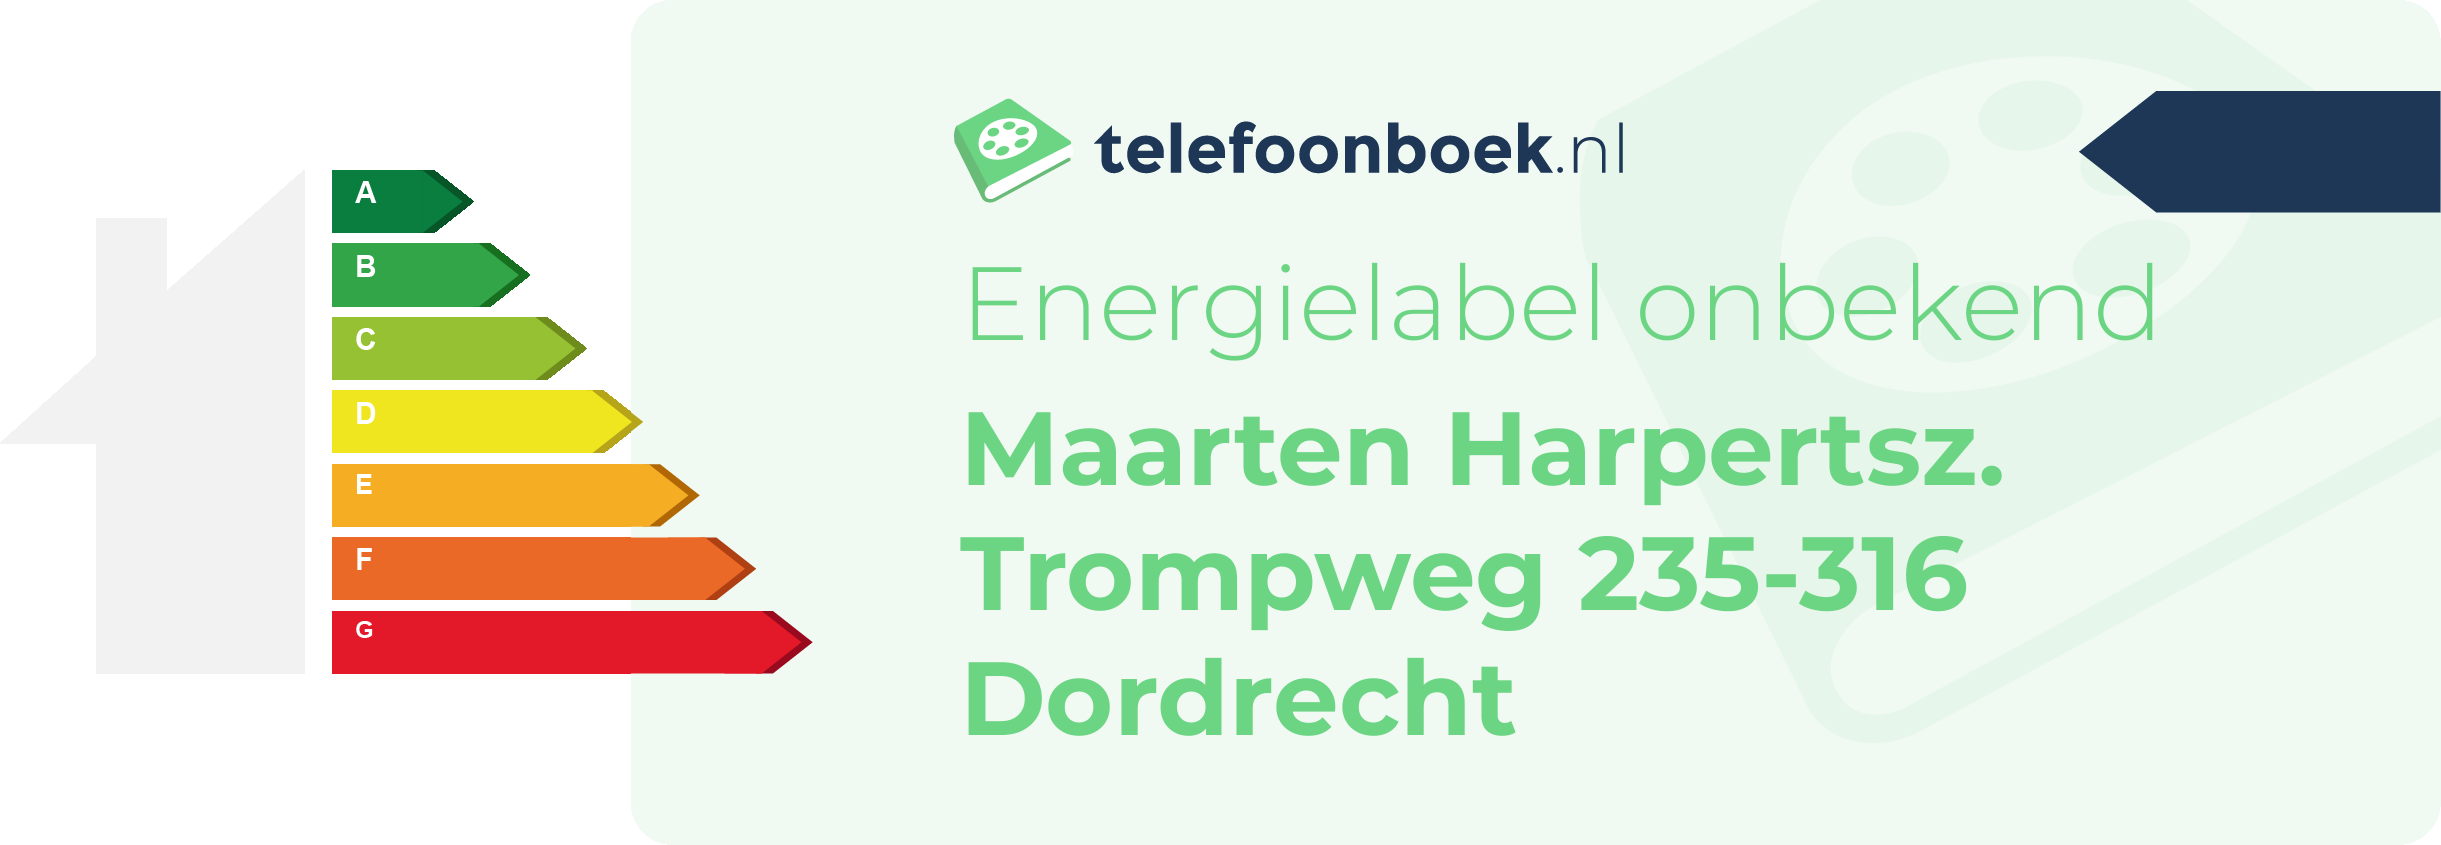 Energielabel Maarten Harpertsz. Trompweg 235-316 Dordrecht